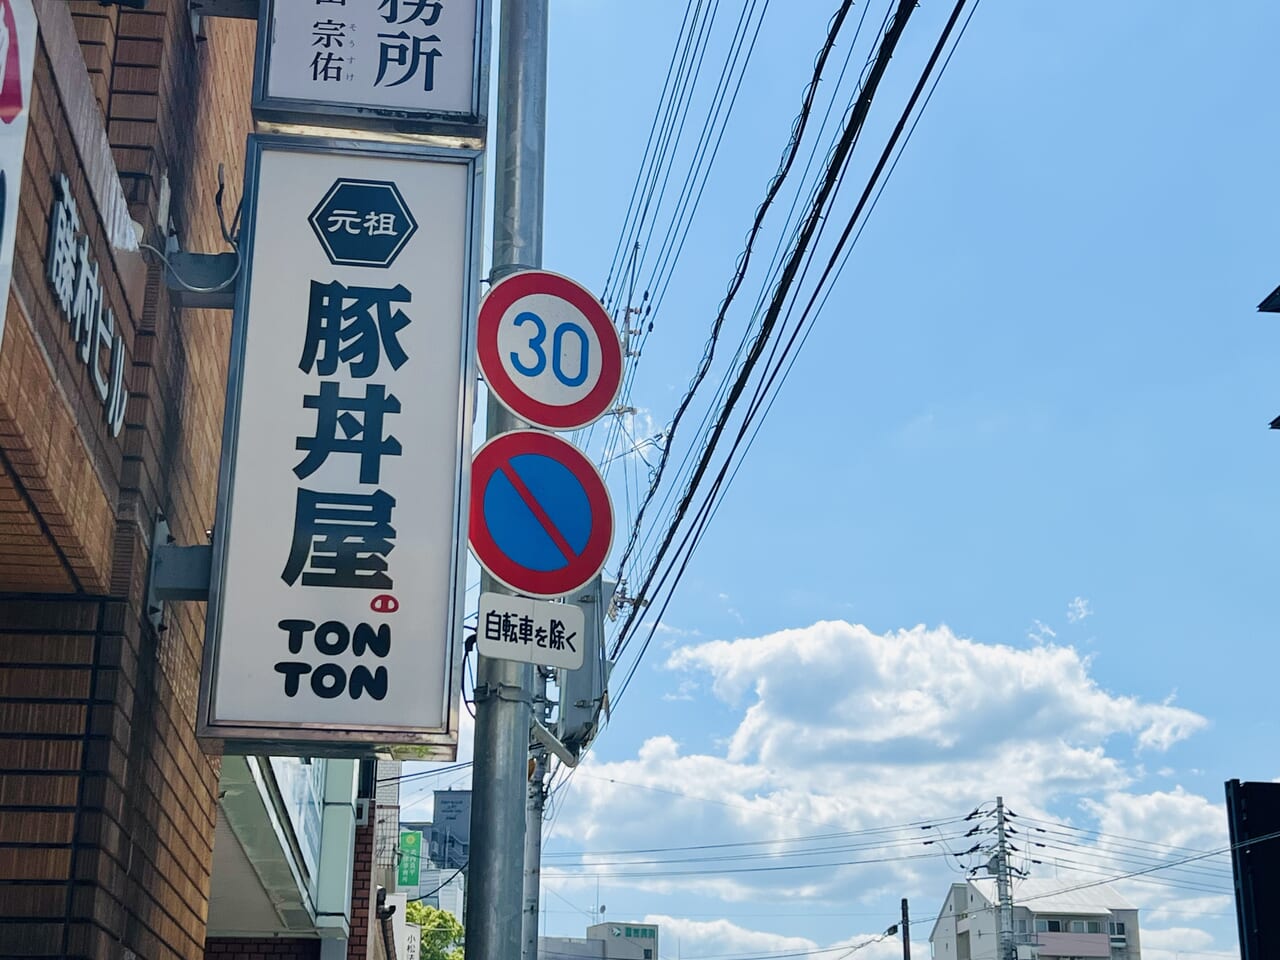 「元祖豚丼屋 TONTON 県庁前店」の外観